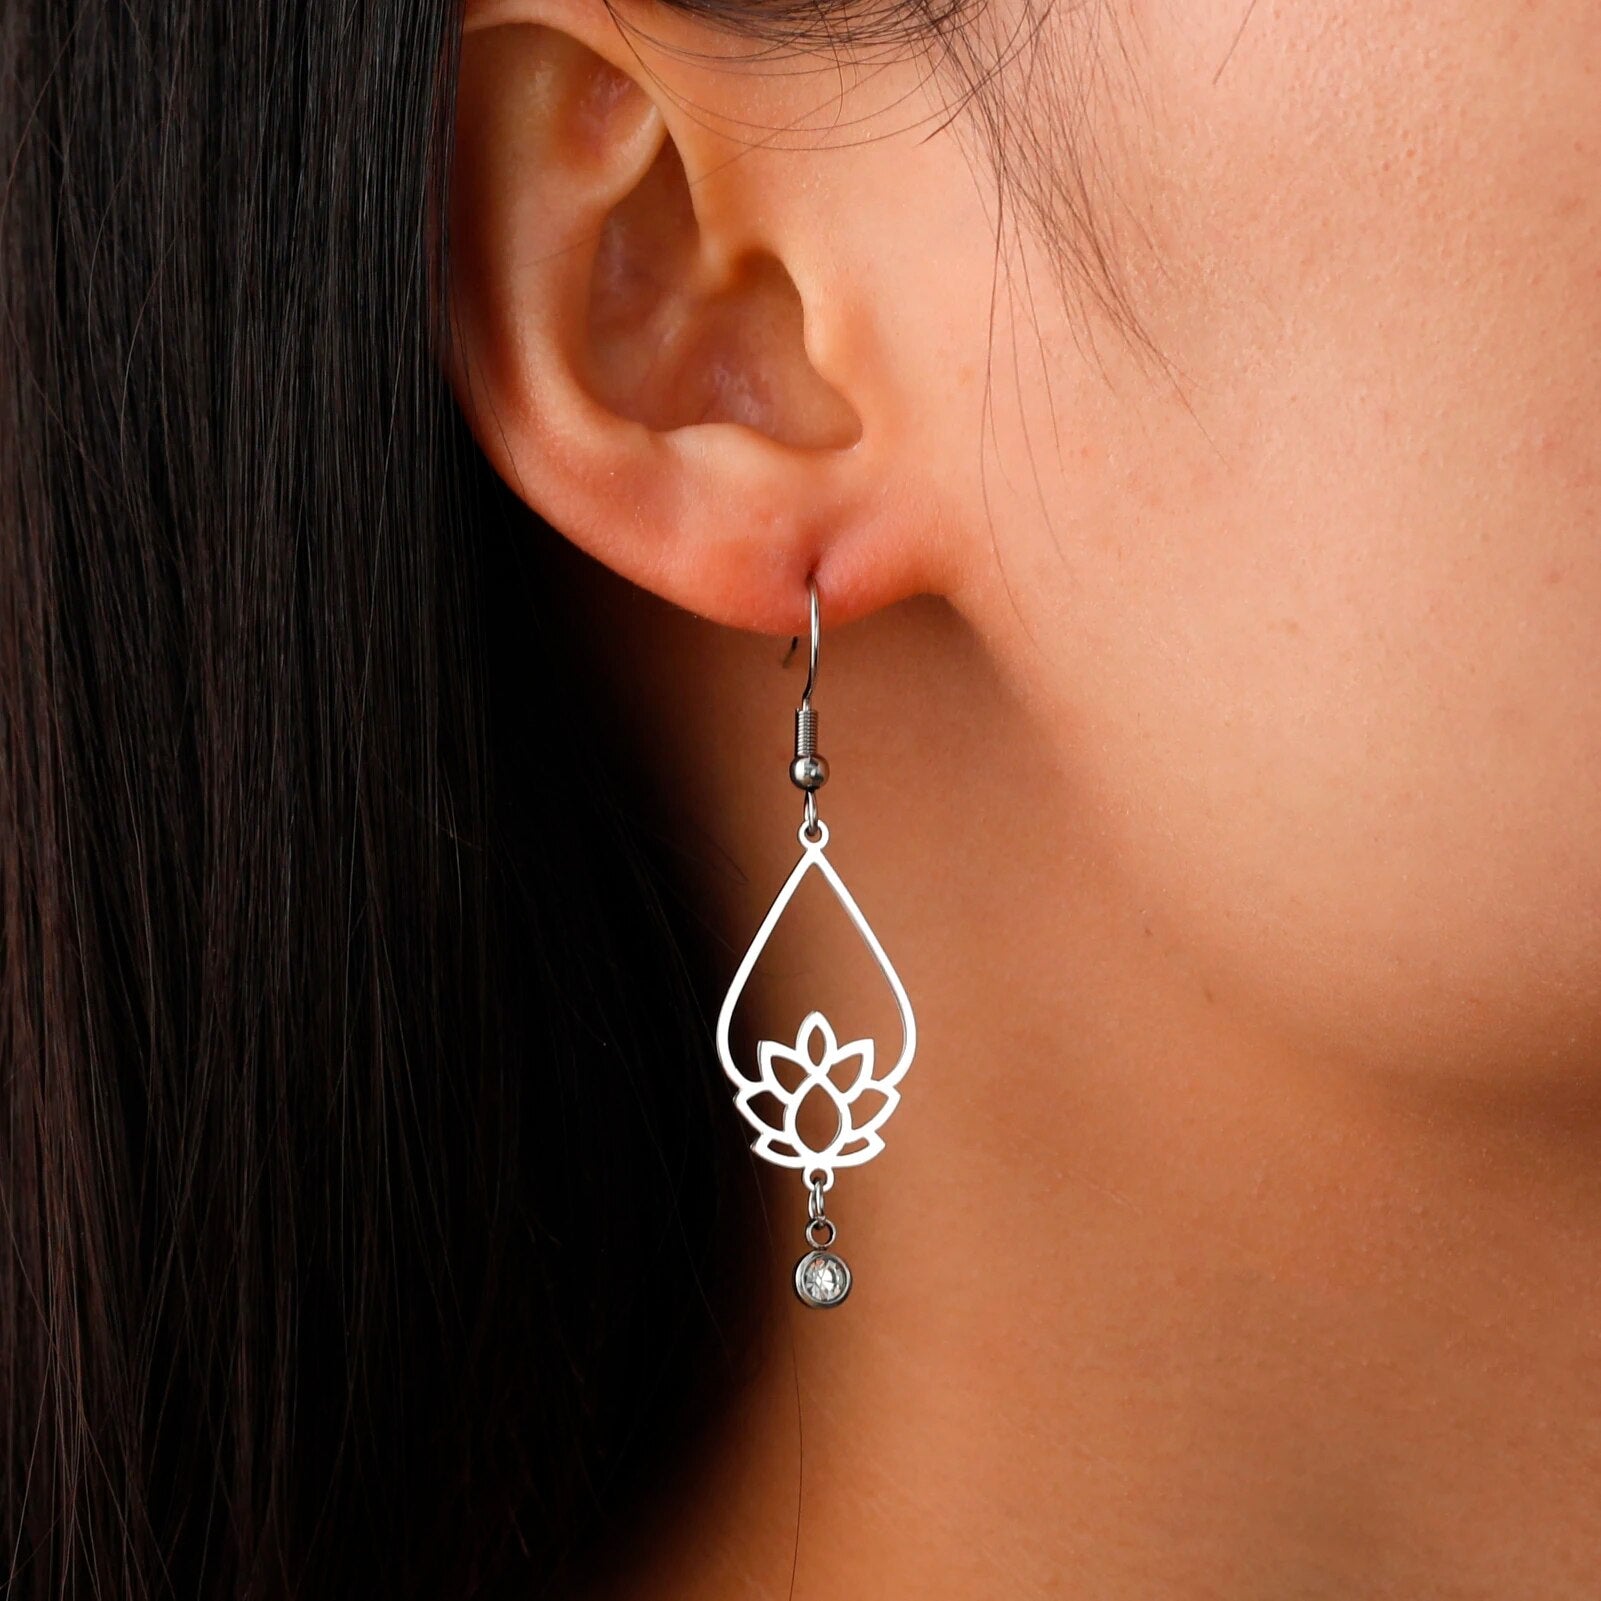 Boucles d'oreilles pendantes fleur de lotus avec zircon, couleur argent, portée